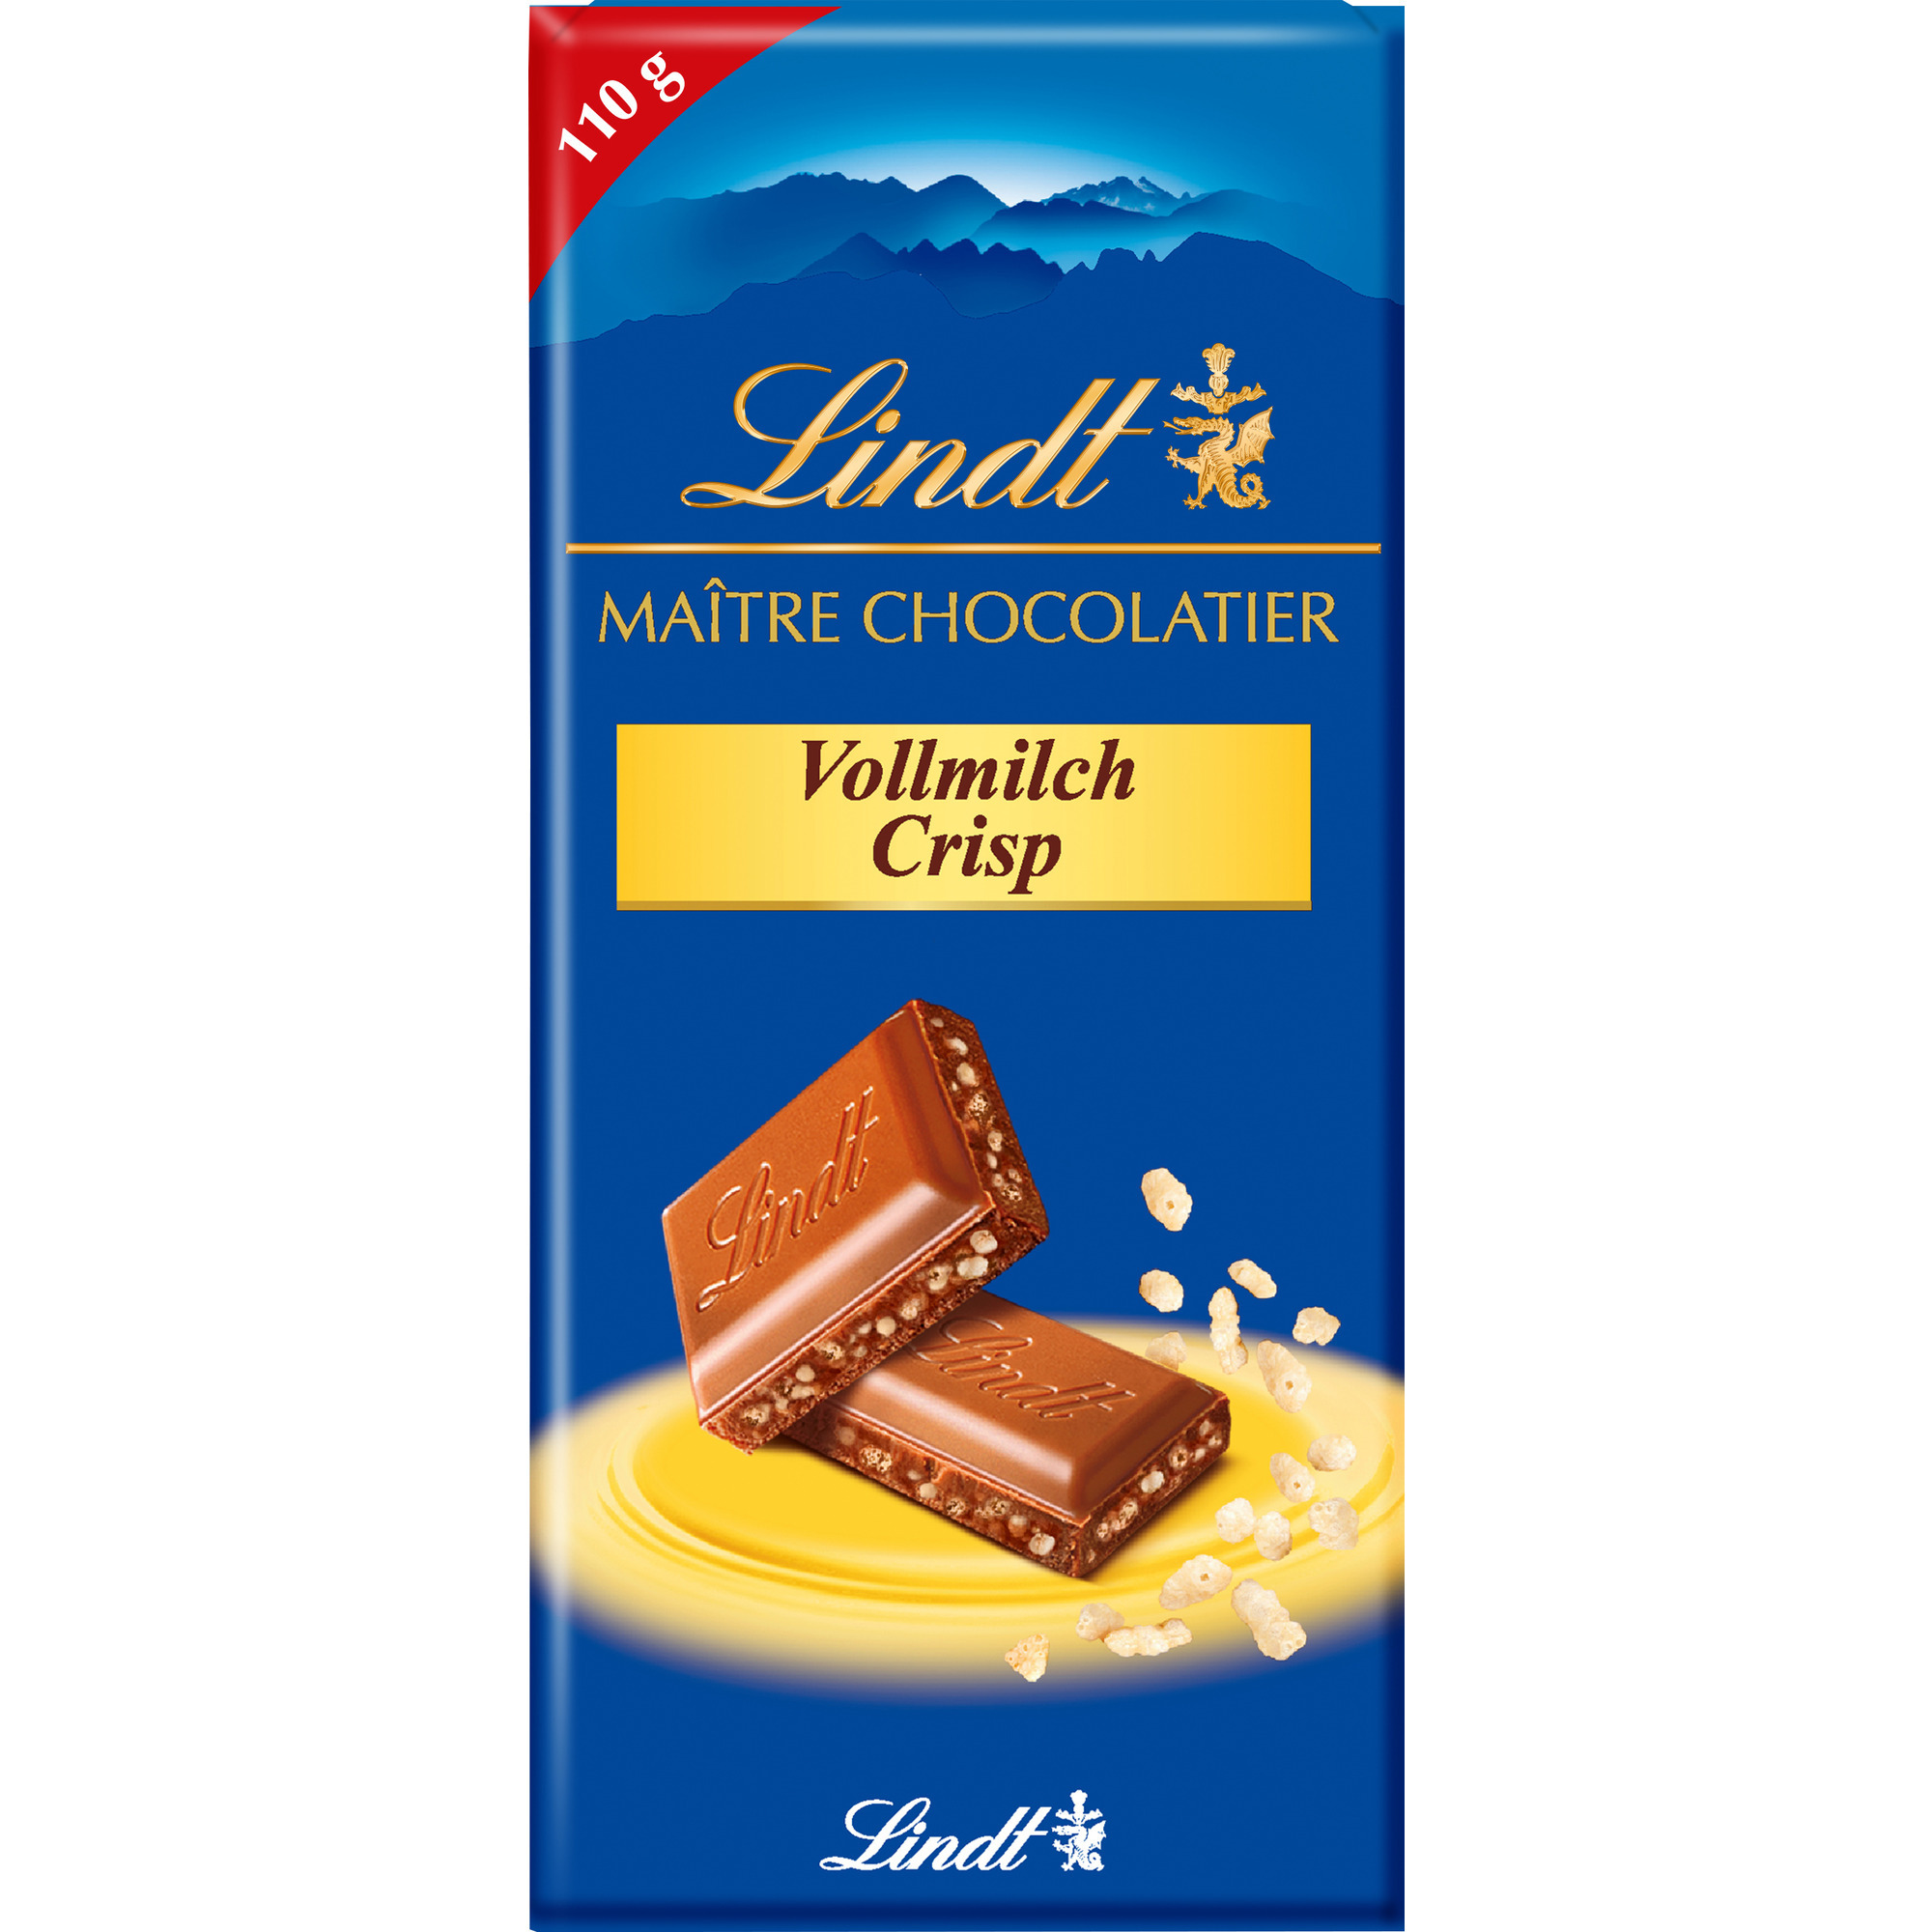 Lindt Maitre Chocolatier 110g, Milch Cri